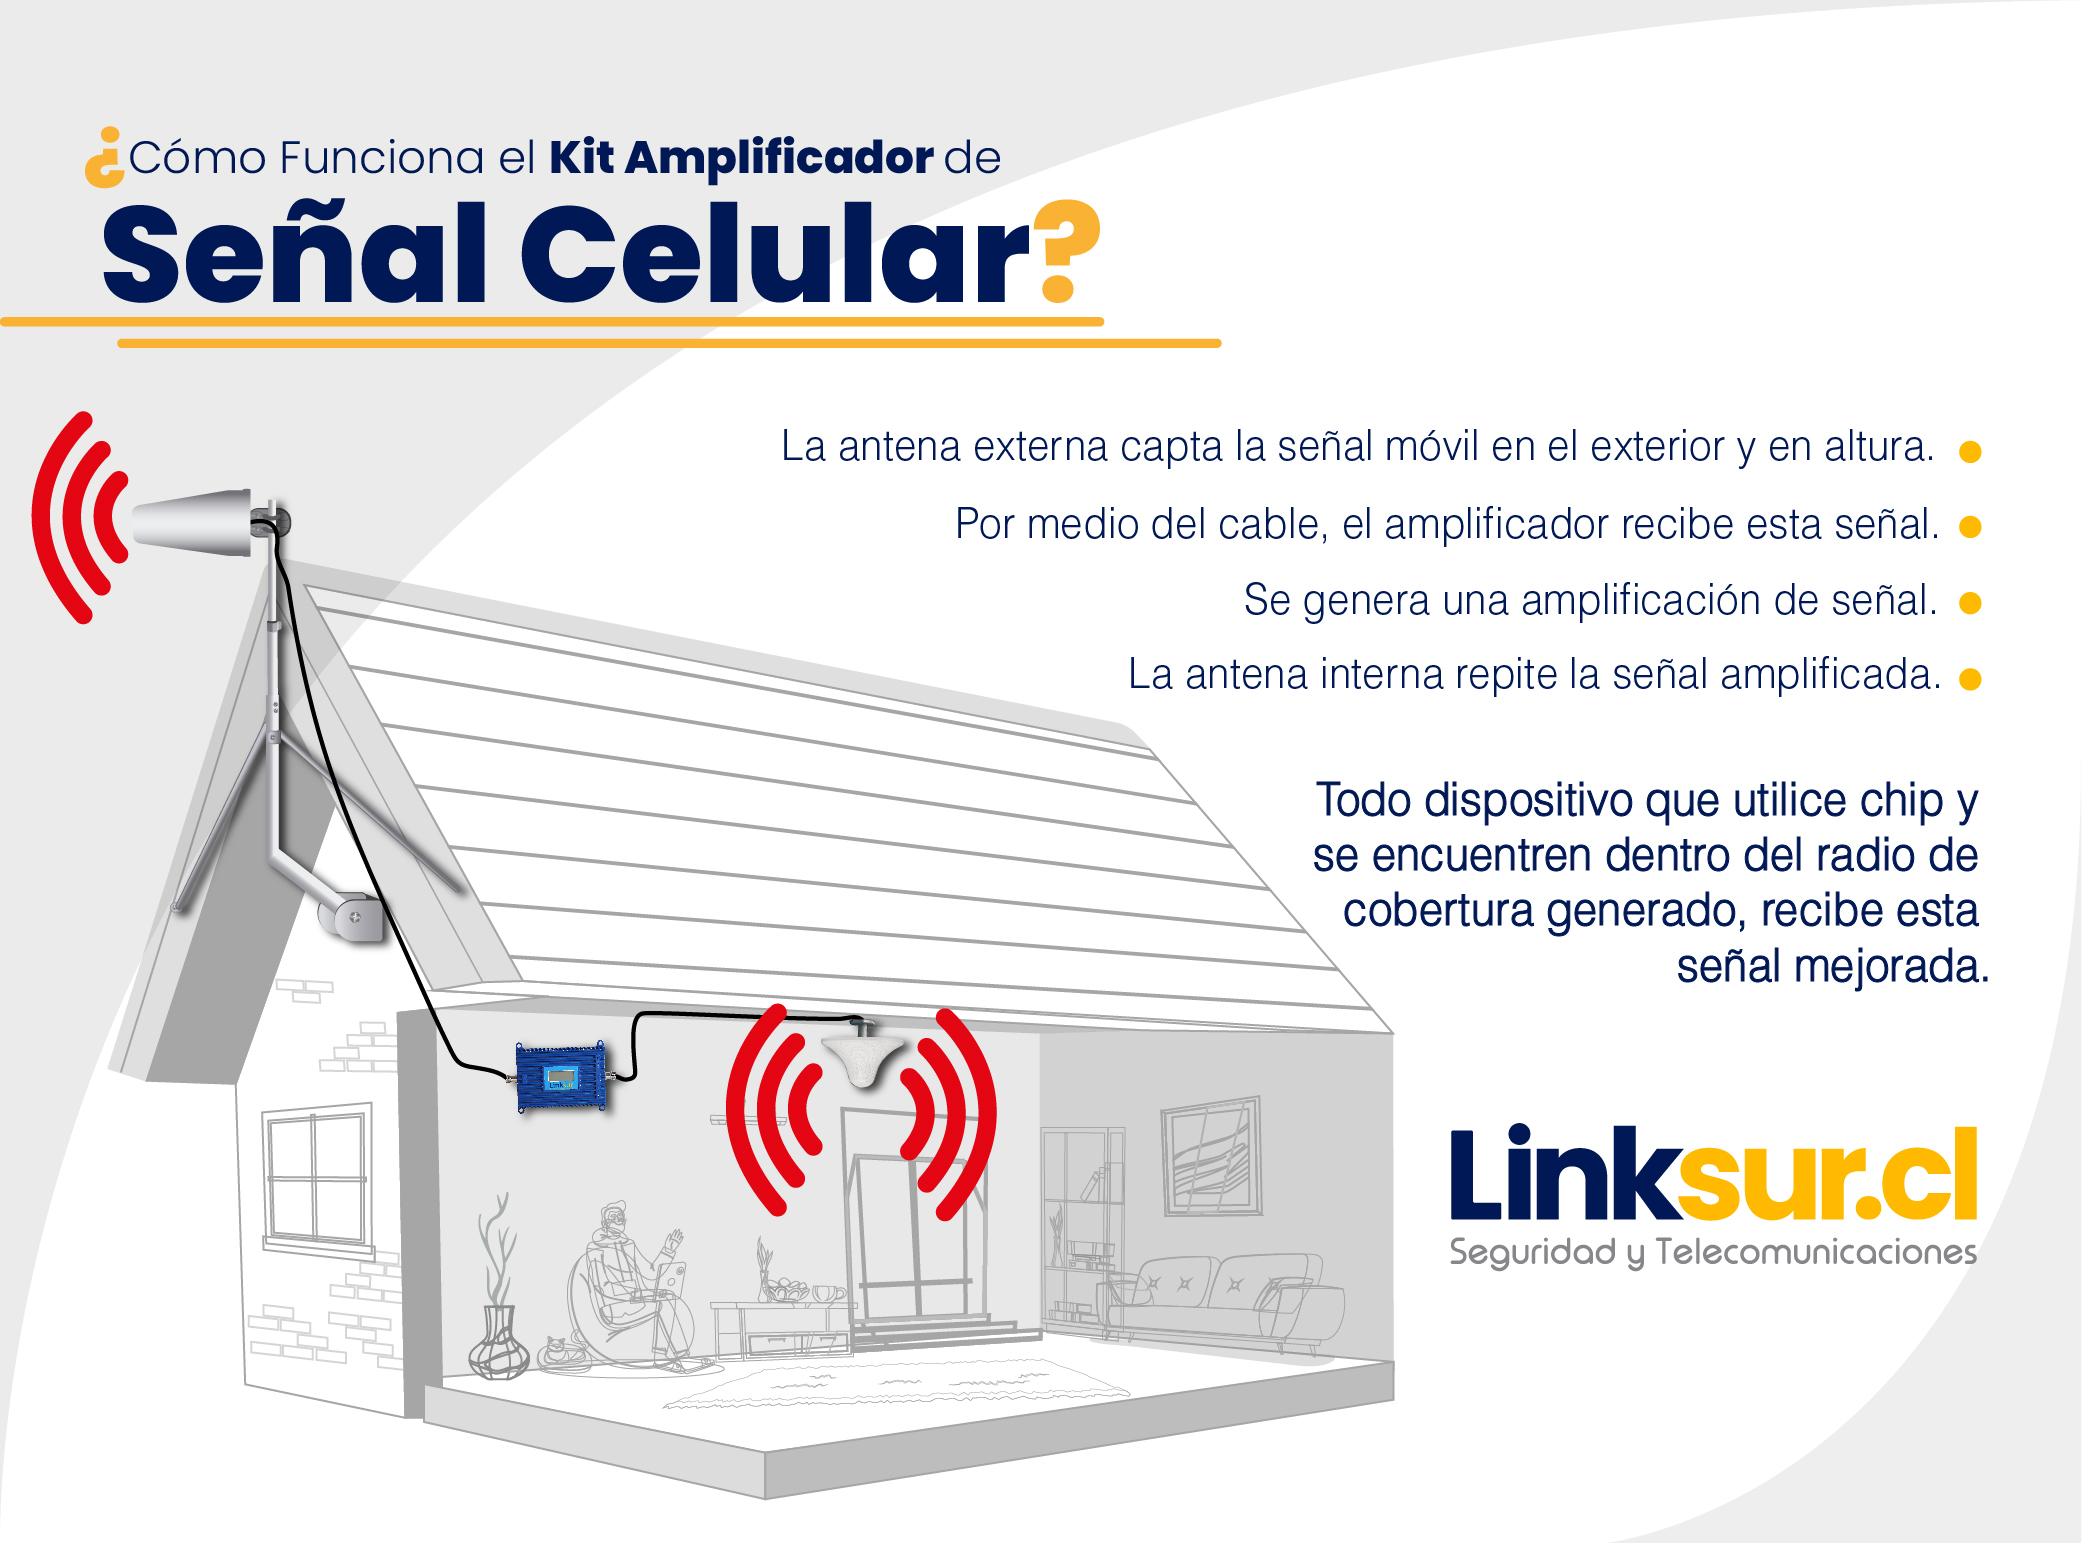 Pro Amplificador en Casa 4G - Amplificador Celular Colombia